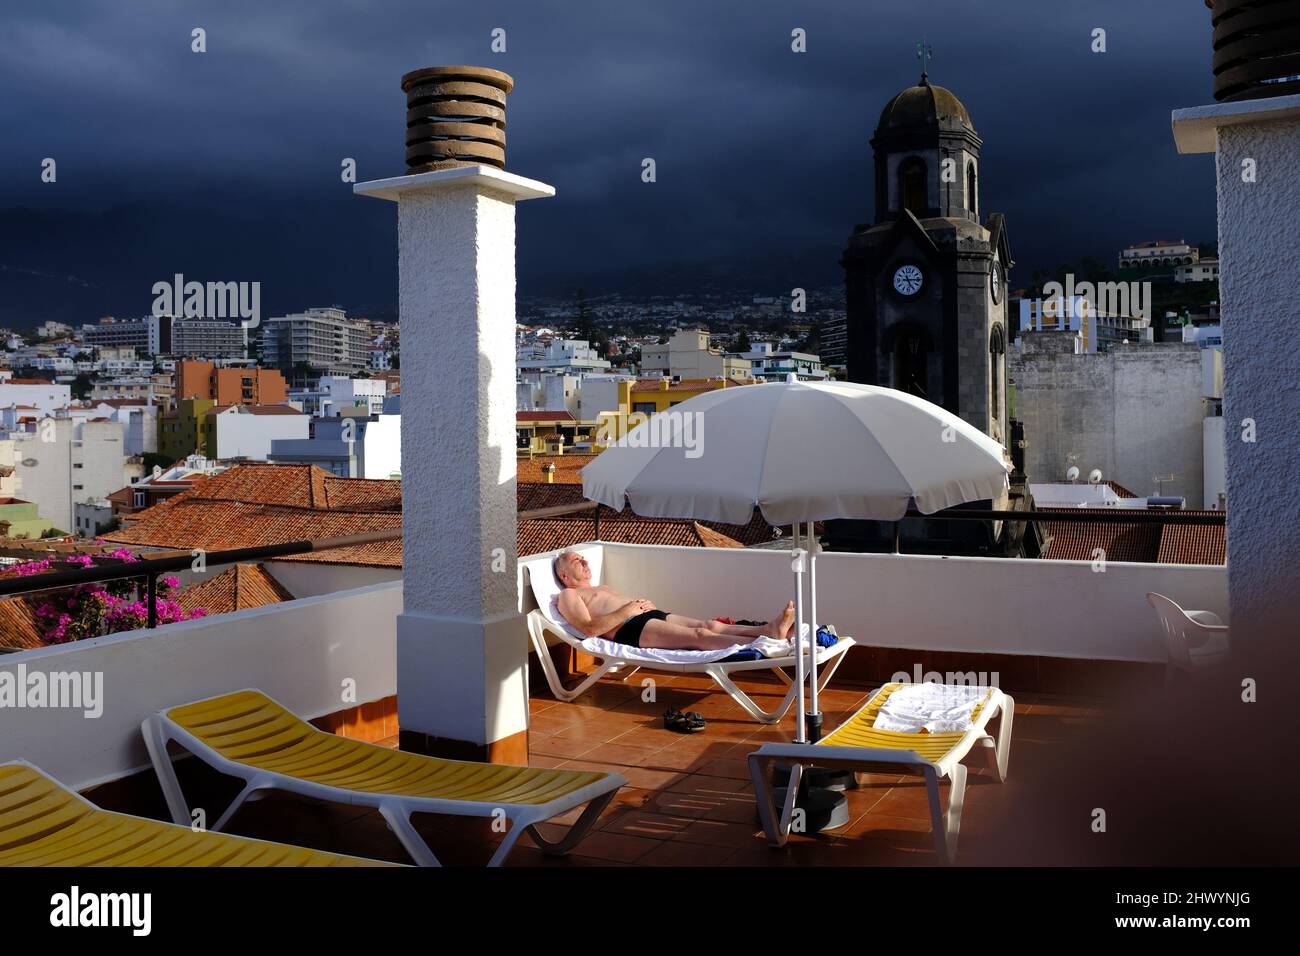 Un homme plus âgé bronzer sur un lit de soleil avec la ville de Puerto de la Cruz, Tenerife, en arrière-plan, Banque D'Images